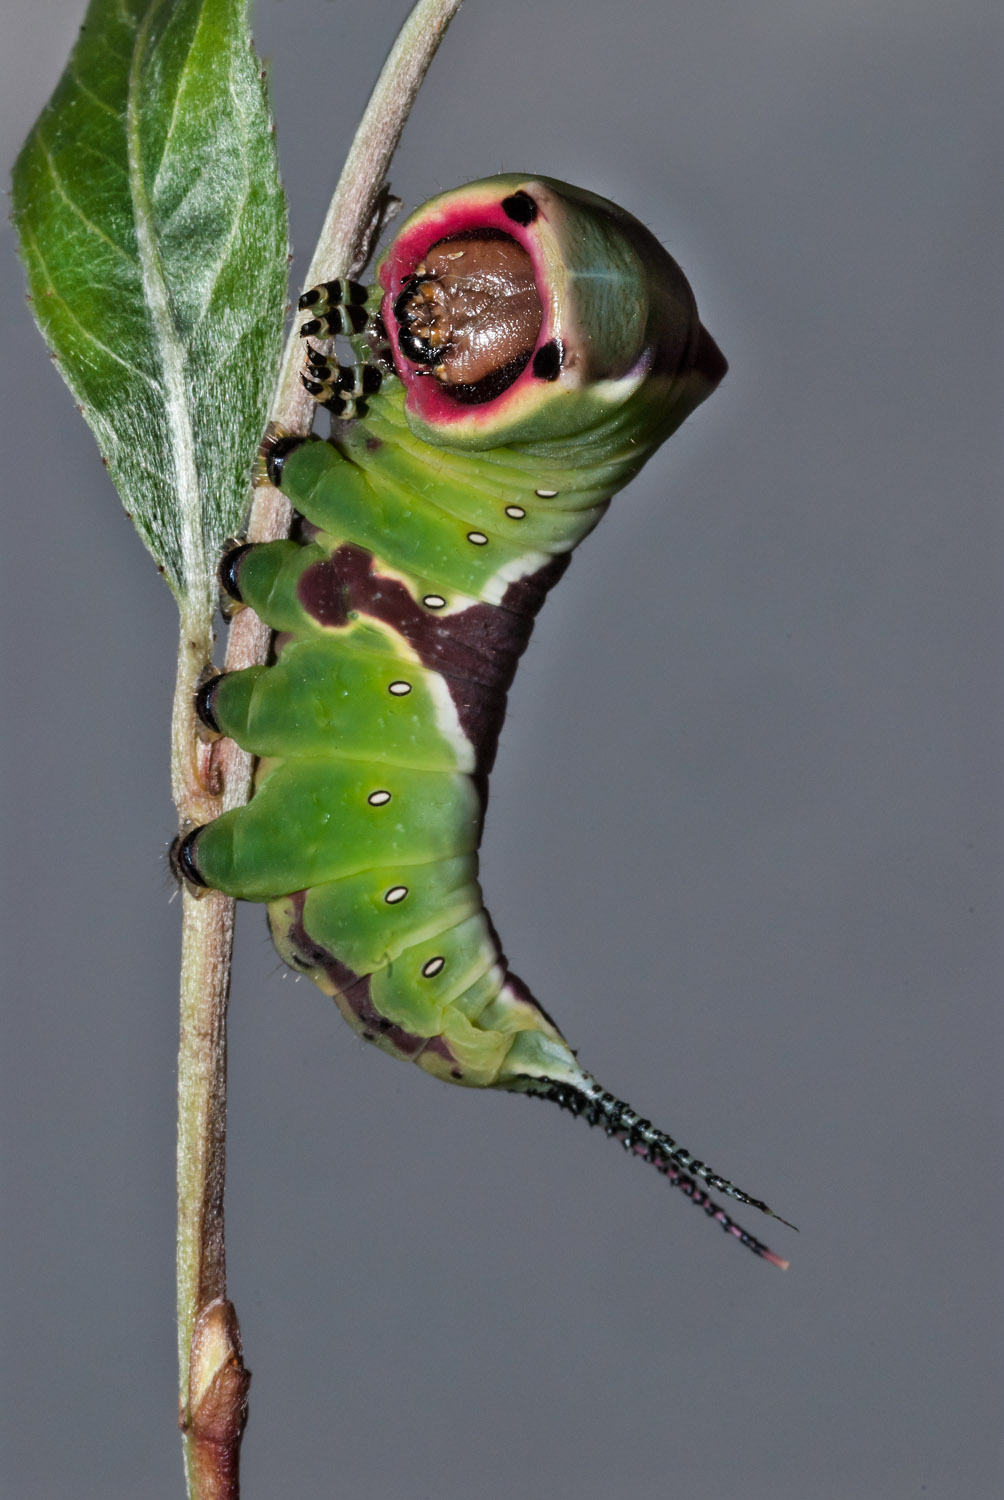 Puss Moth caterpillar after the 4th ecdysis